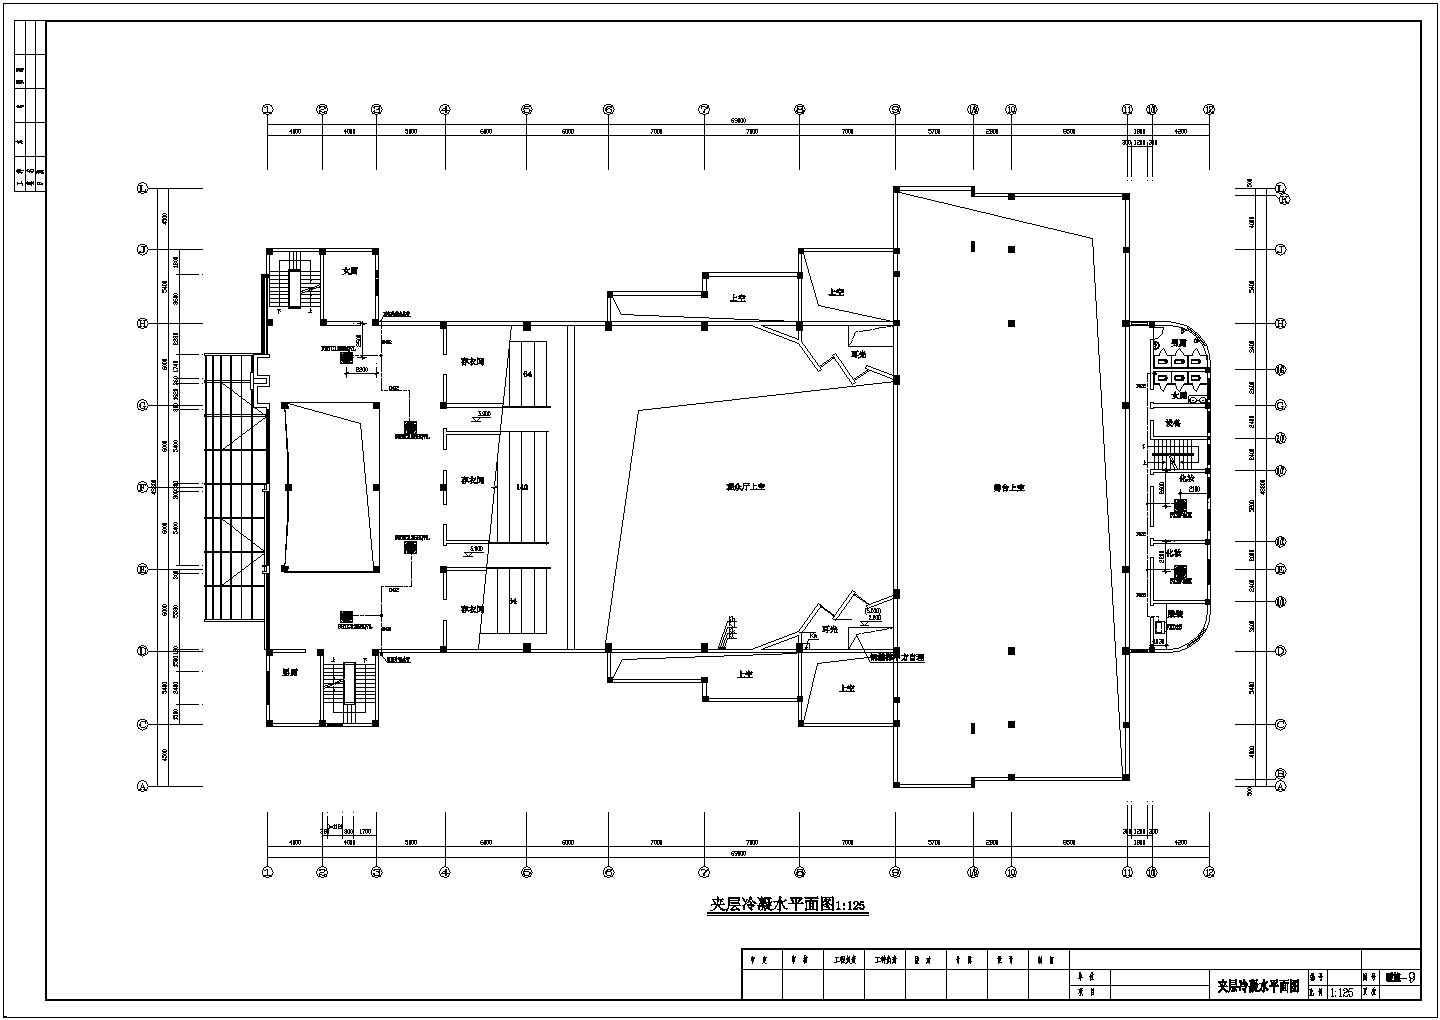 河南省某市幸福蓝海剧院VRV空调系统设计CAD图纸